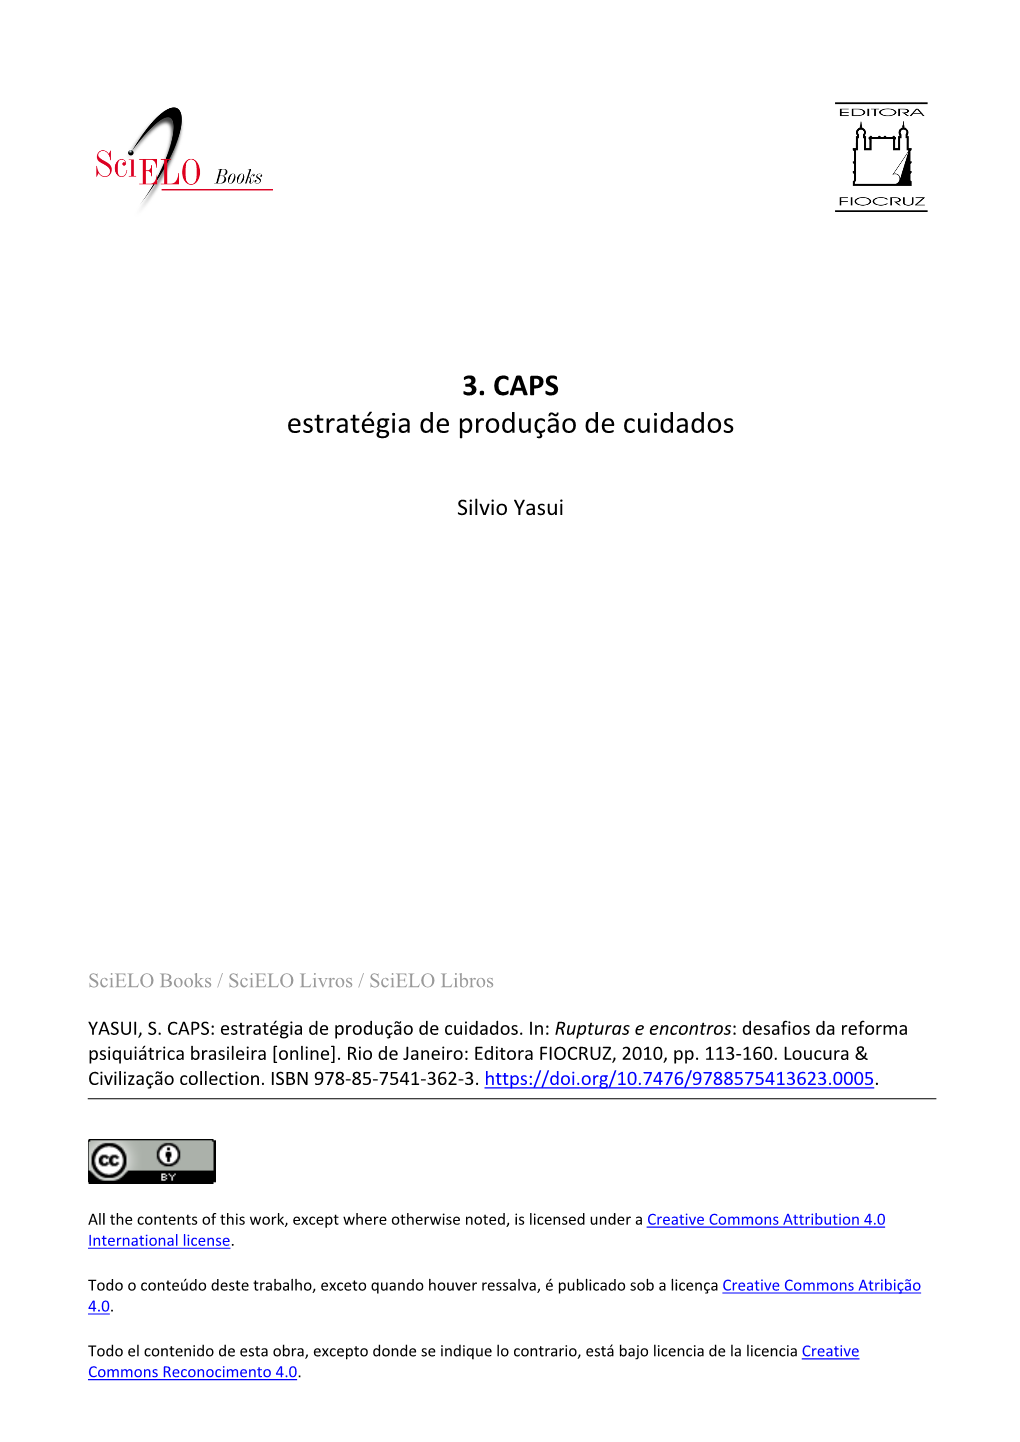 3. CAPS Estratégia De Produção De Cuidados